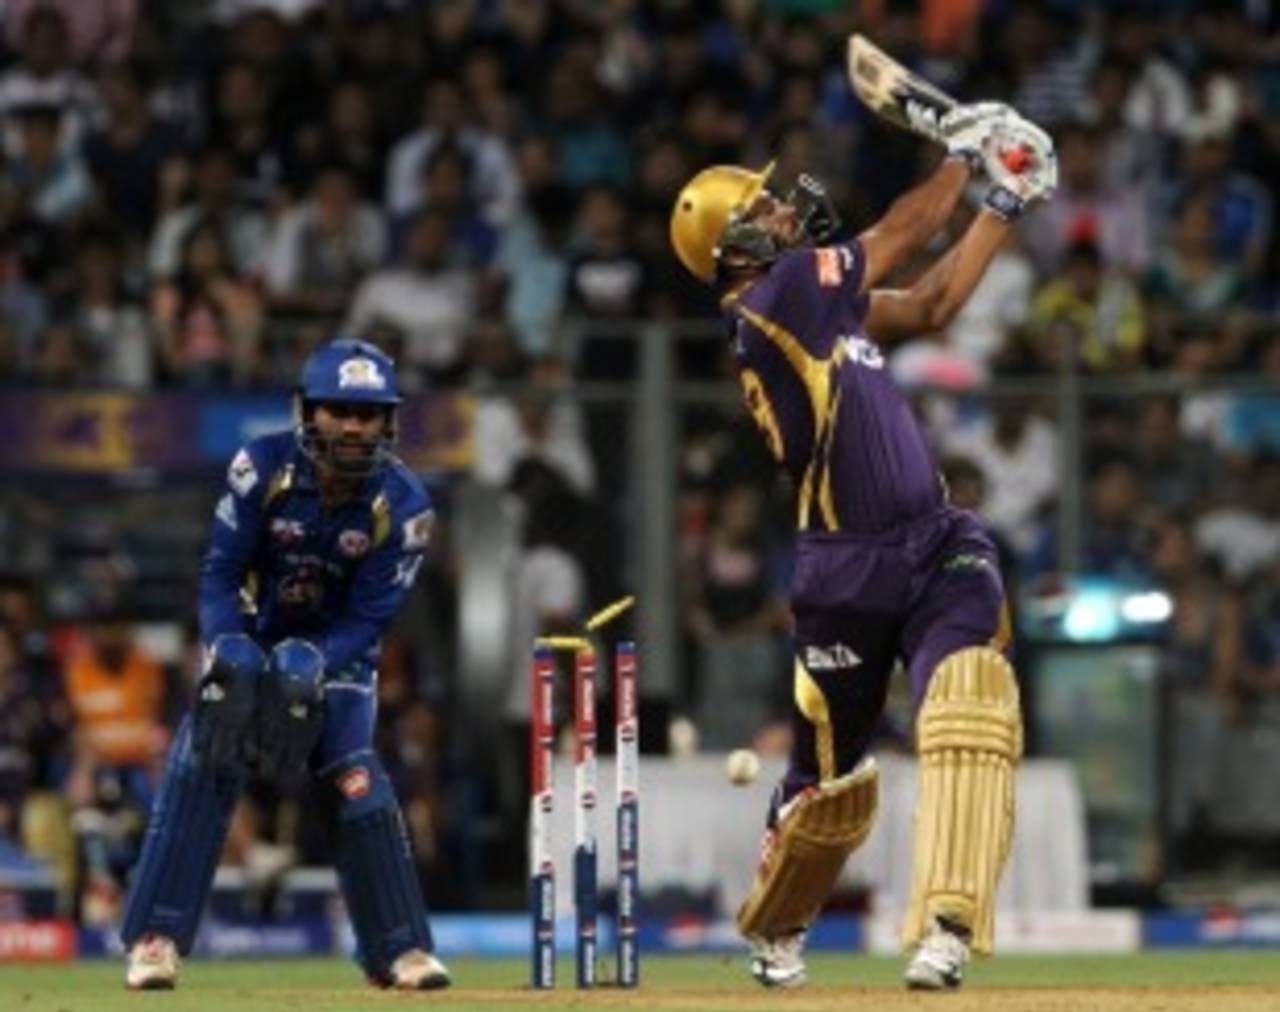 Yusuf Pathan was bowled for 13, Mumbai Indians v Kolkata Knight Riders, IPL, Mumbai, May 7, 2013